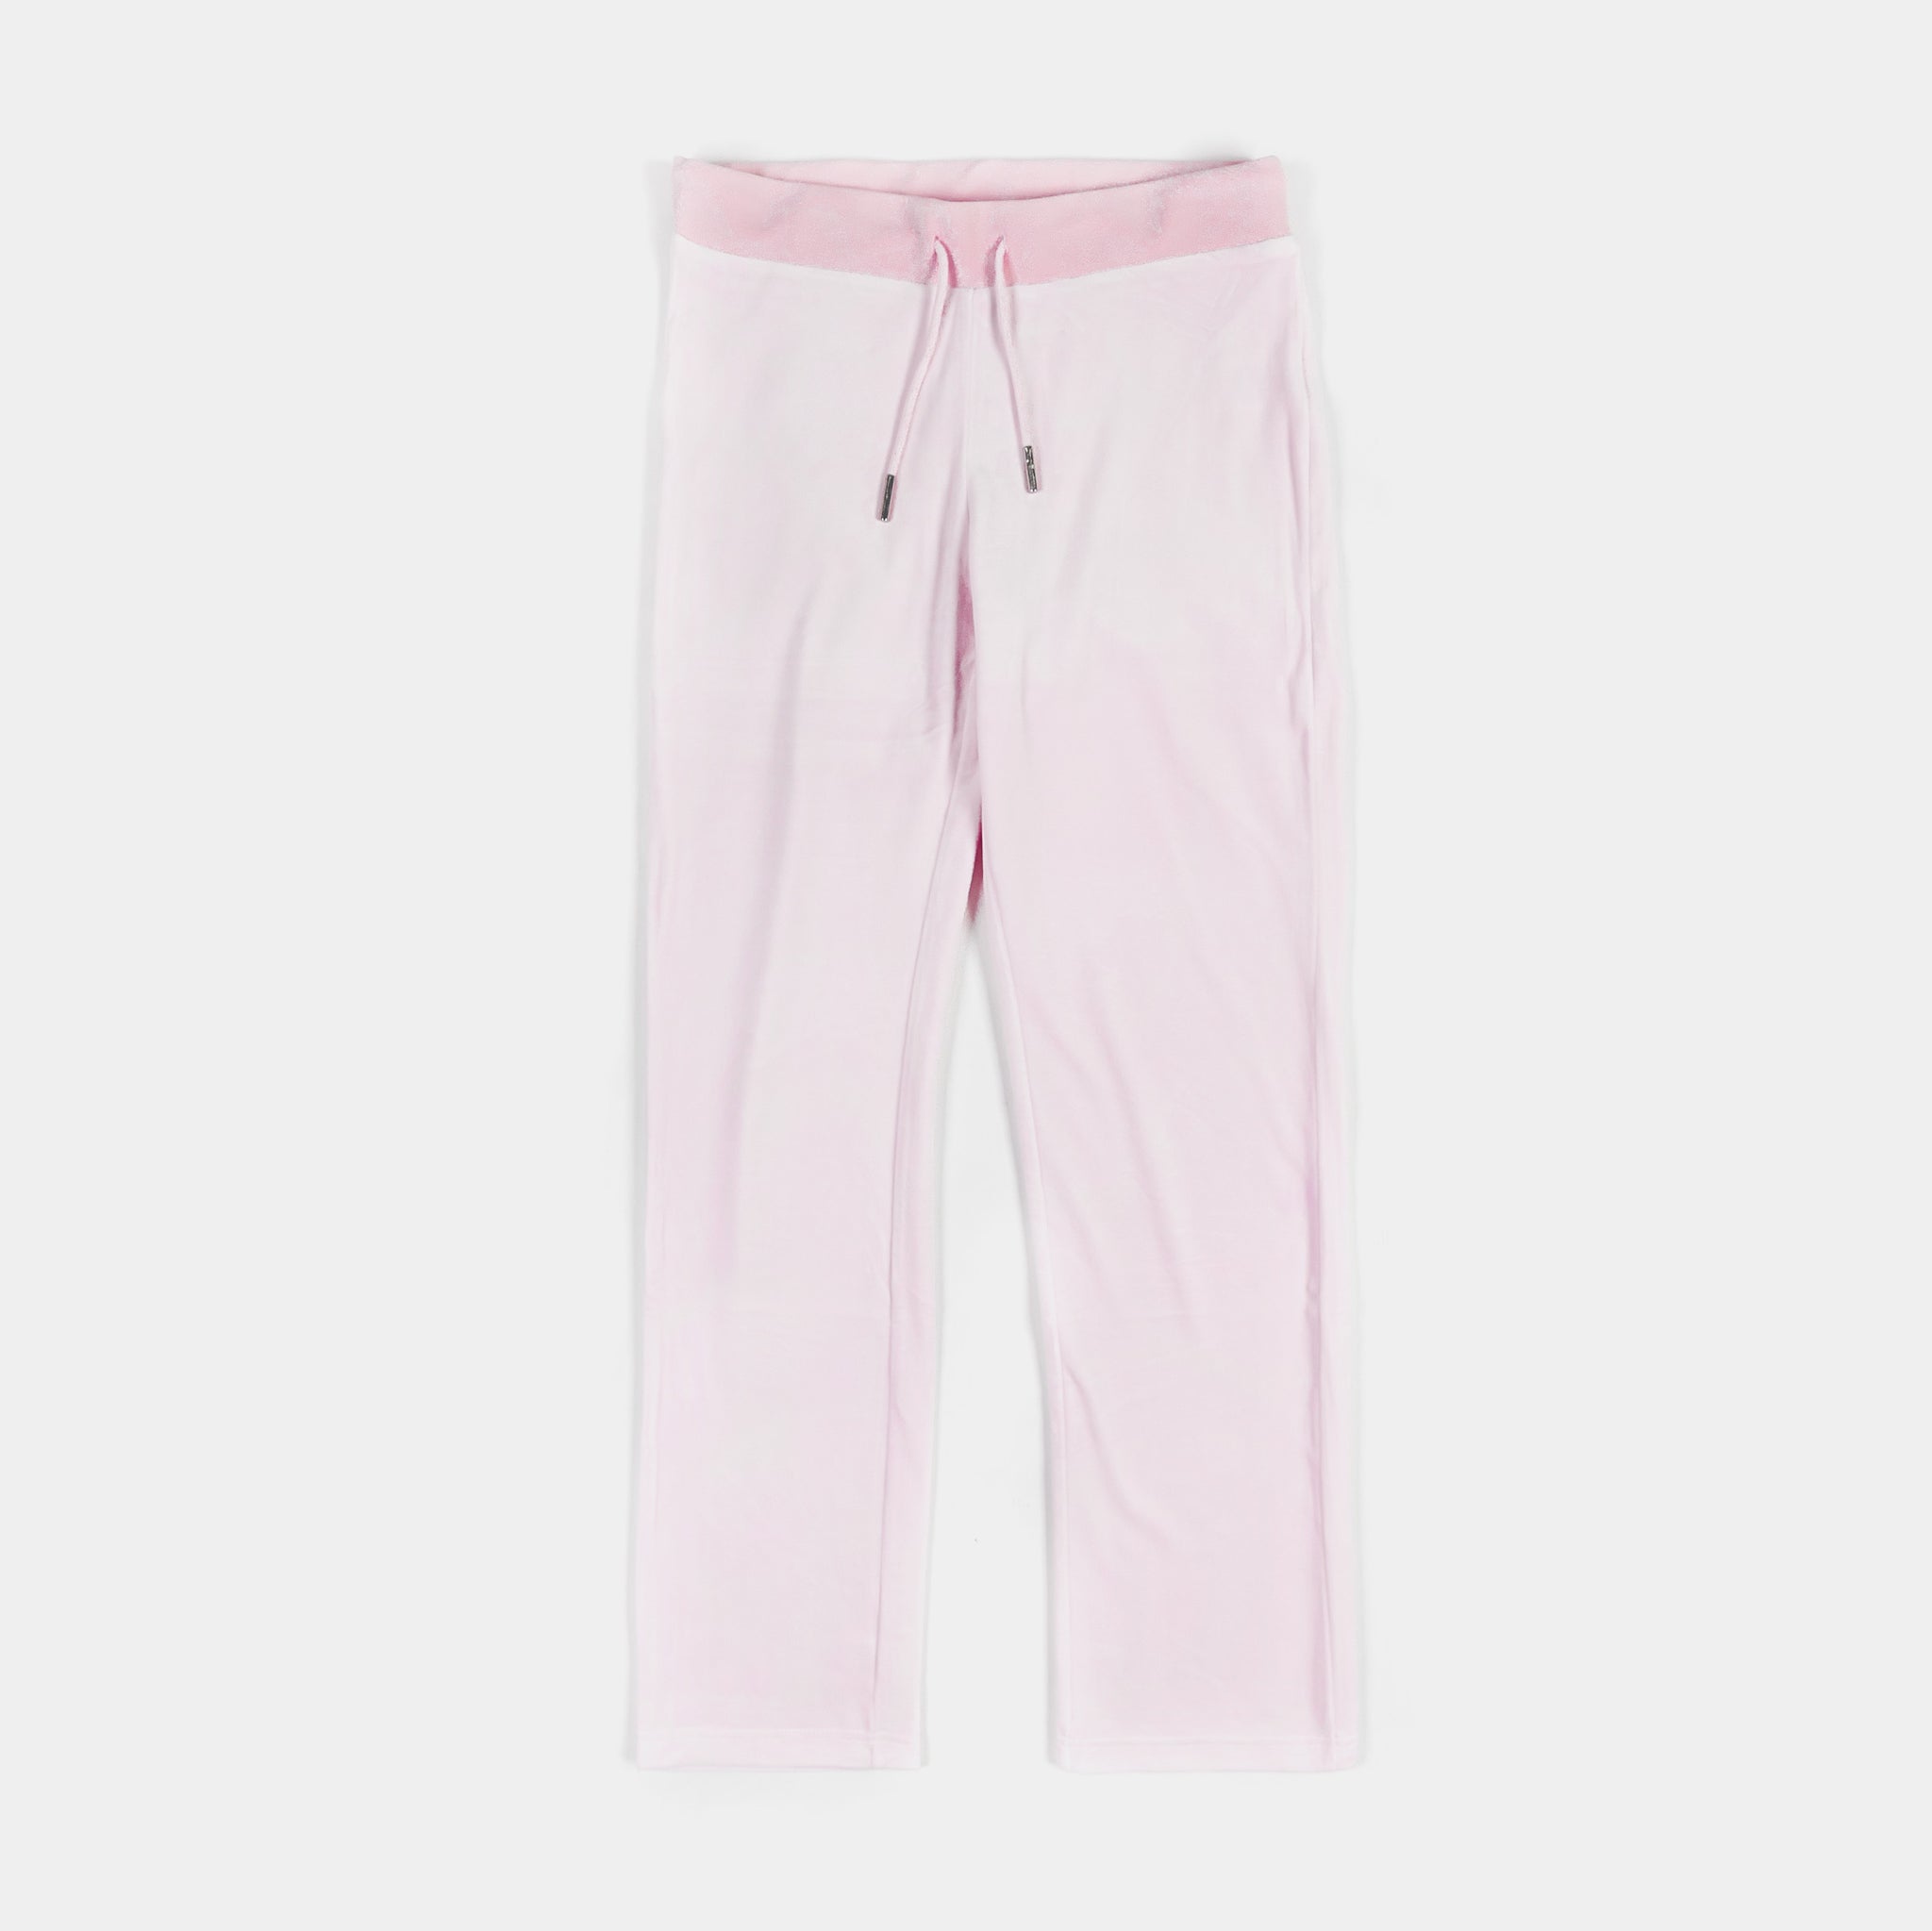 OG Big Bling Velour Womens Track Pants (Light Pink)